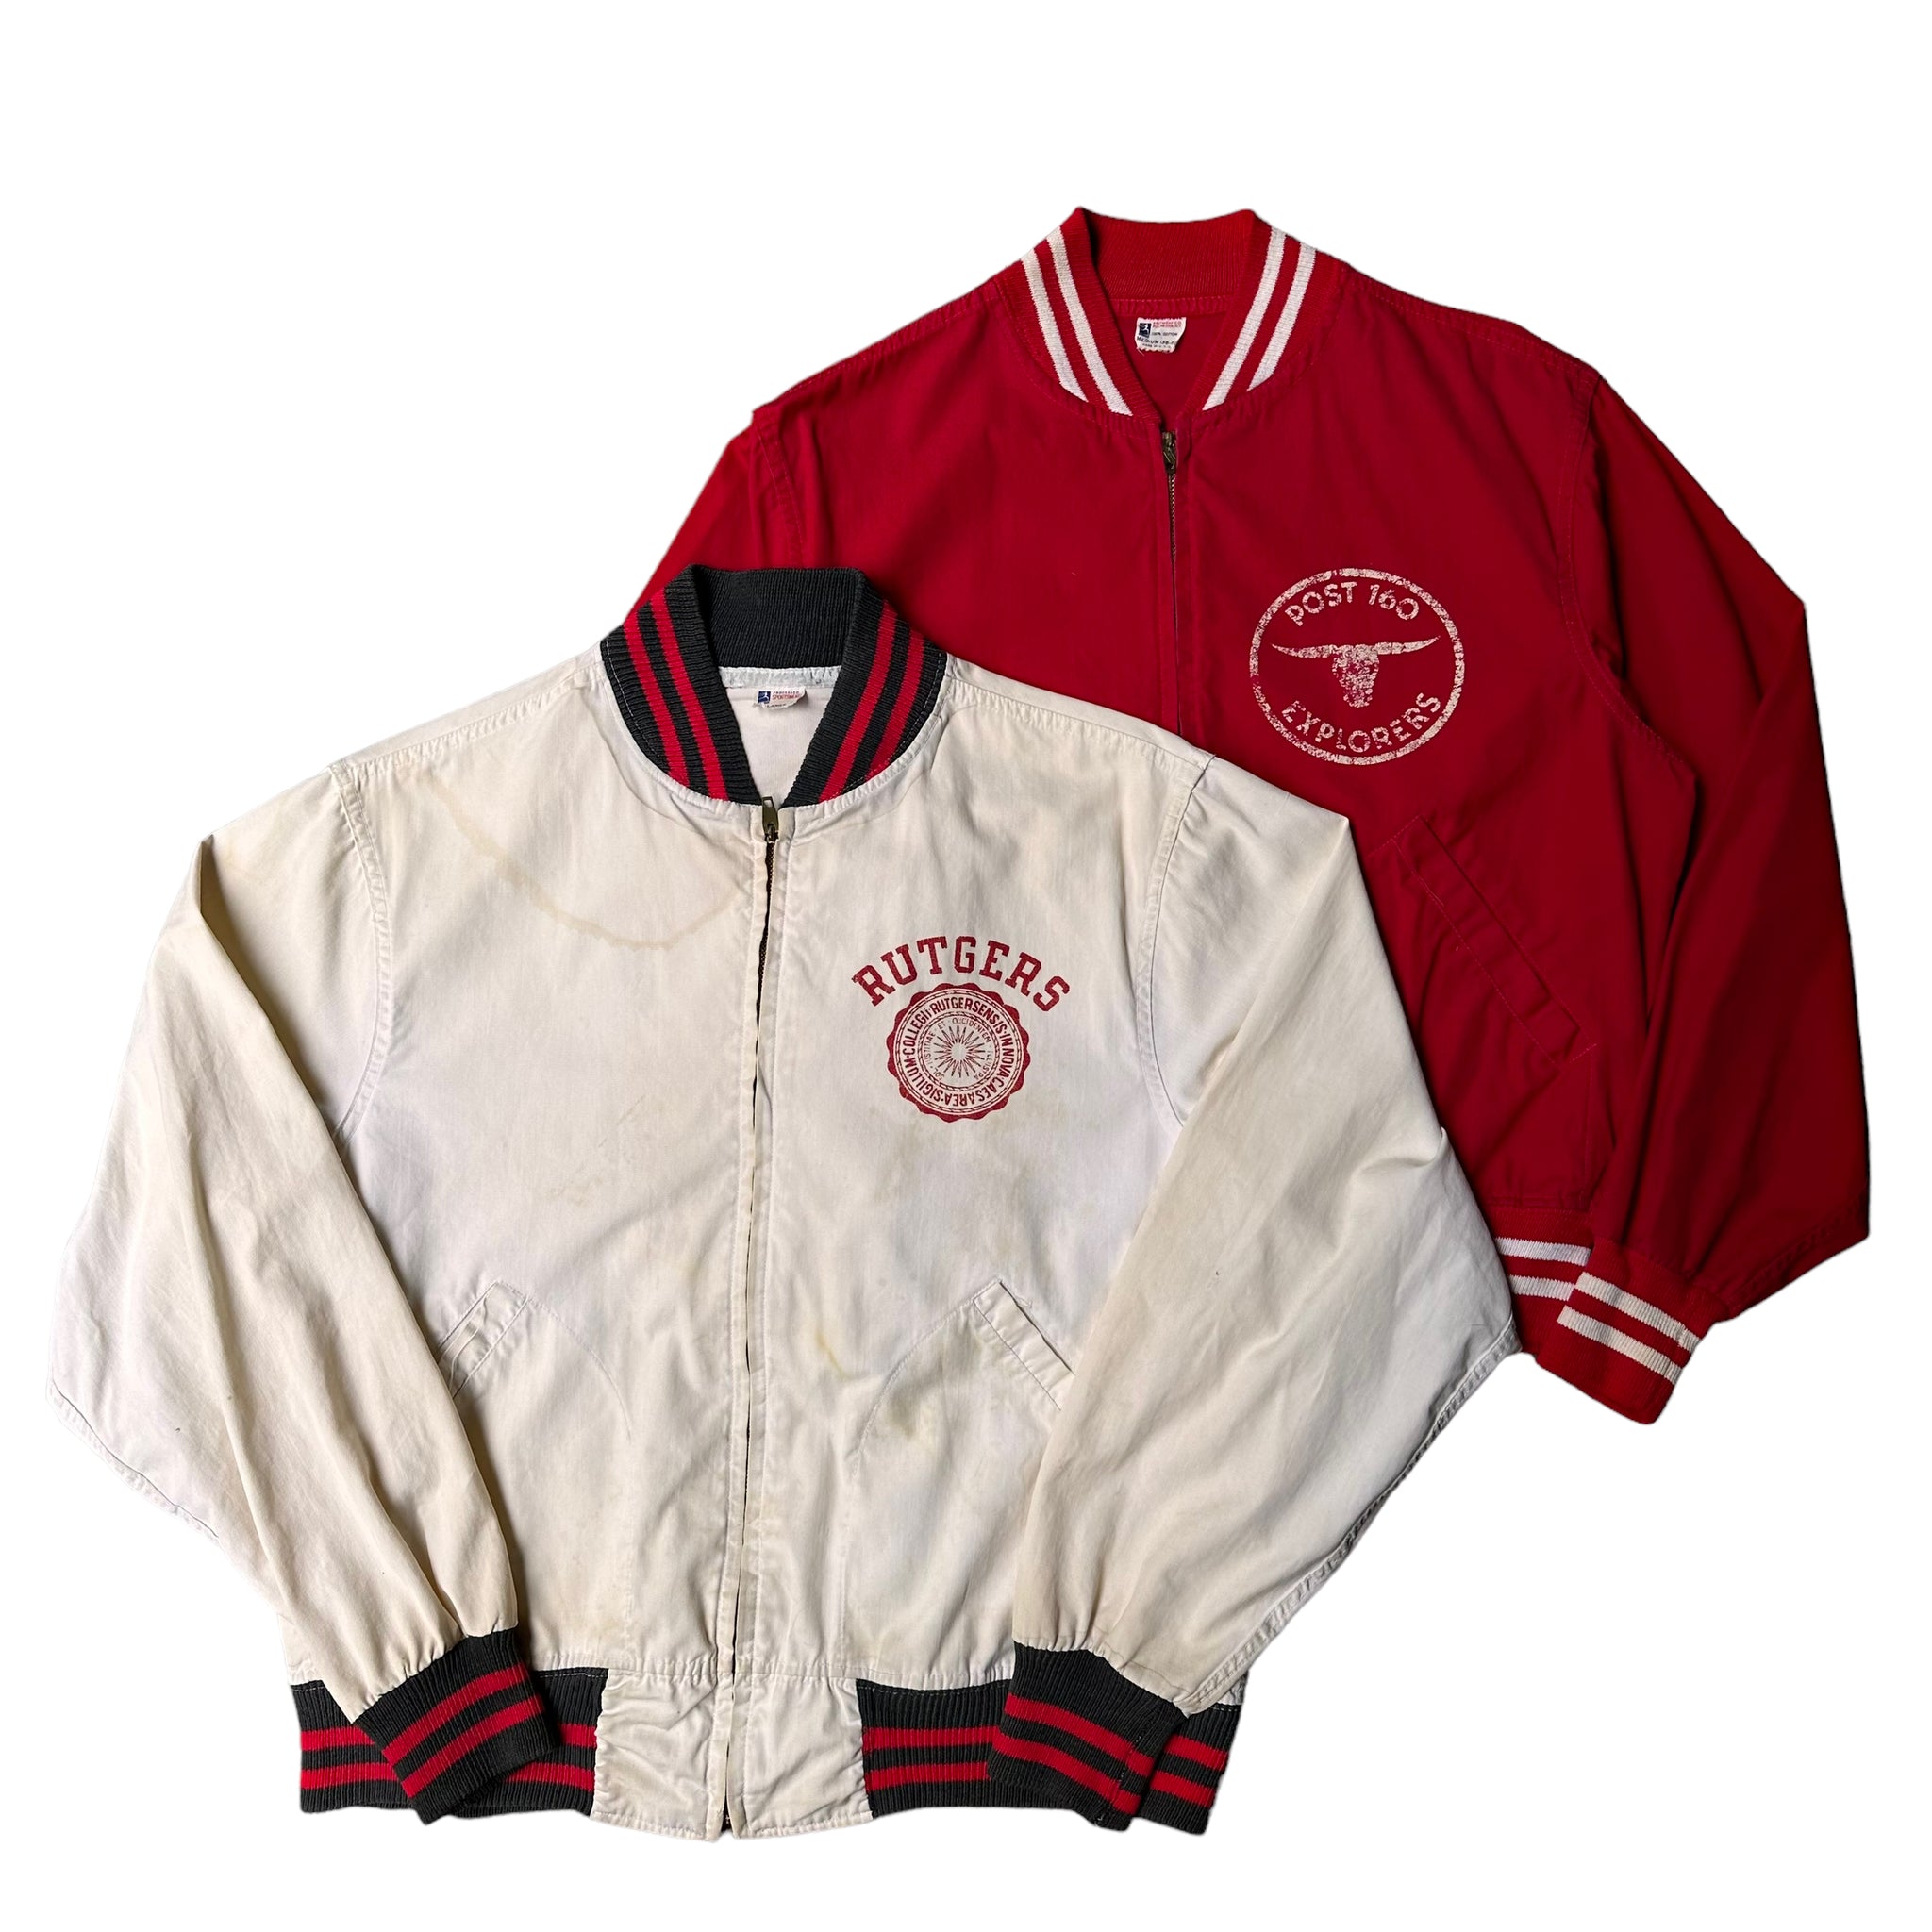 skam tyveri Continental Champion running man jacket – Vintage Sponsor